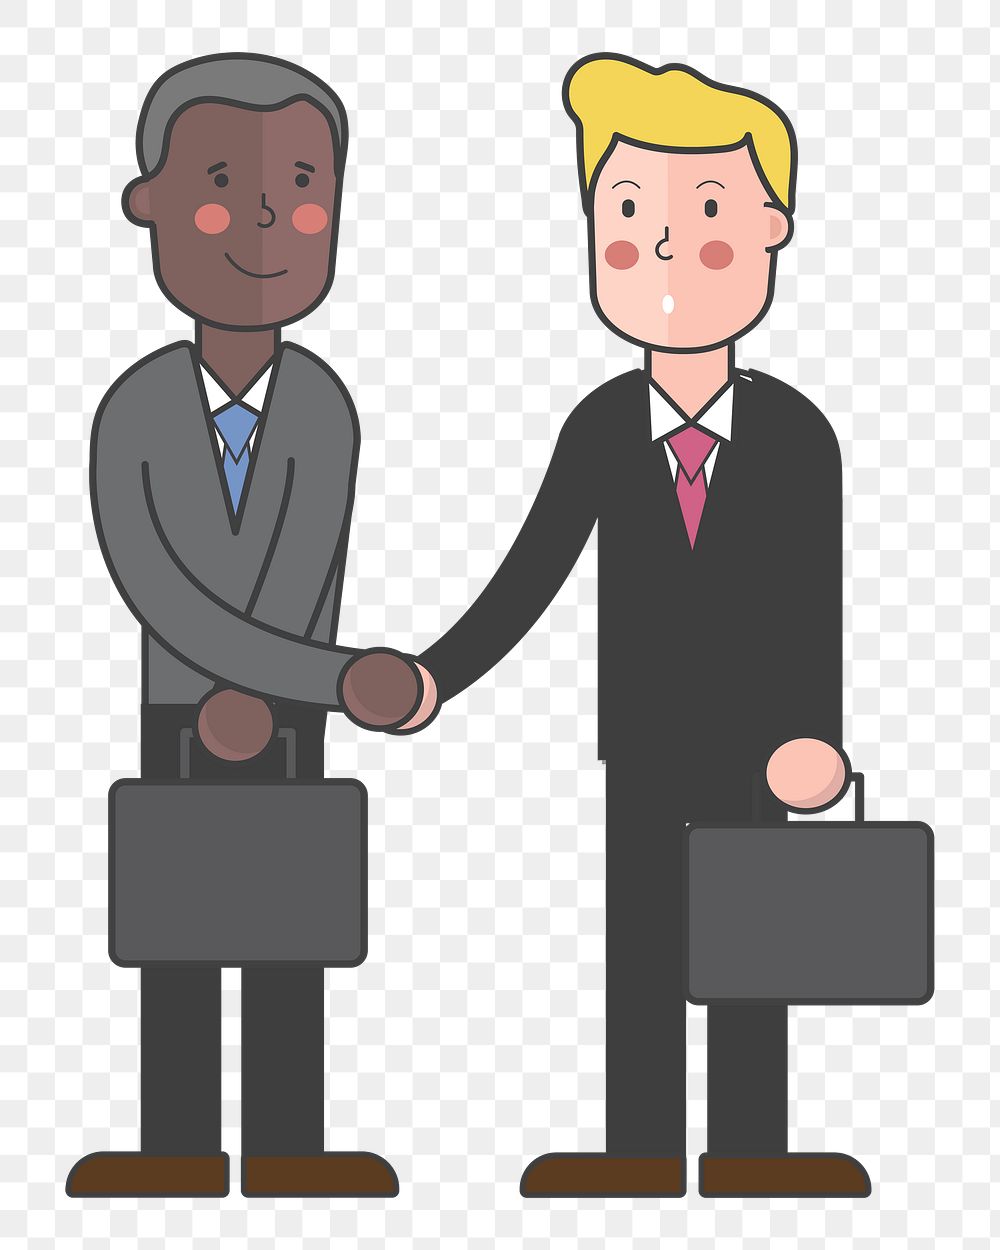 Business handshake png illustration, transparent background